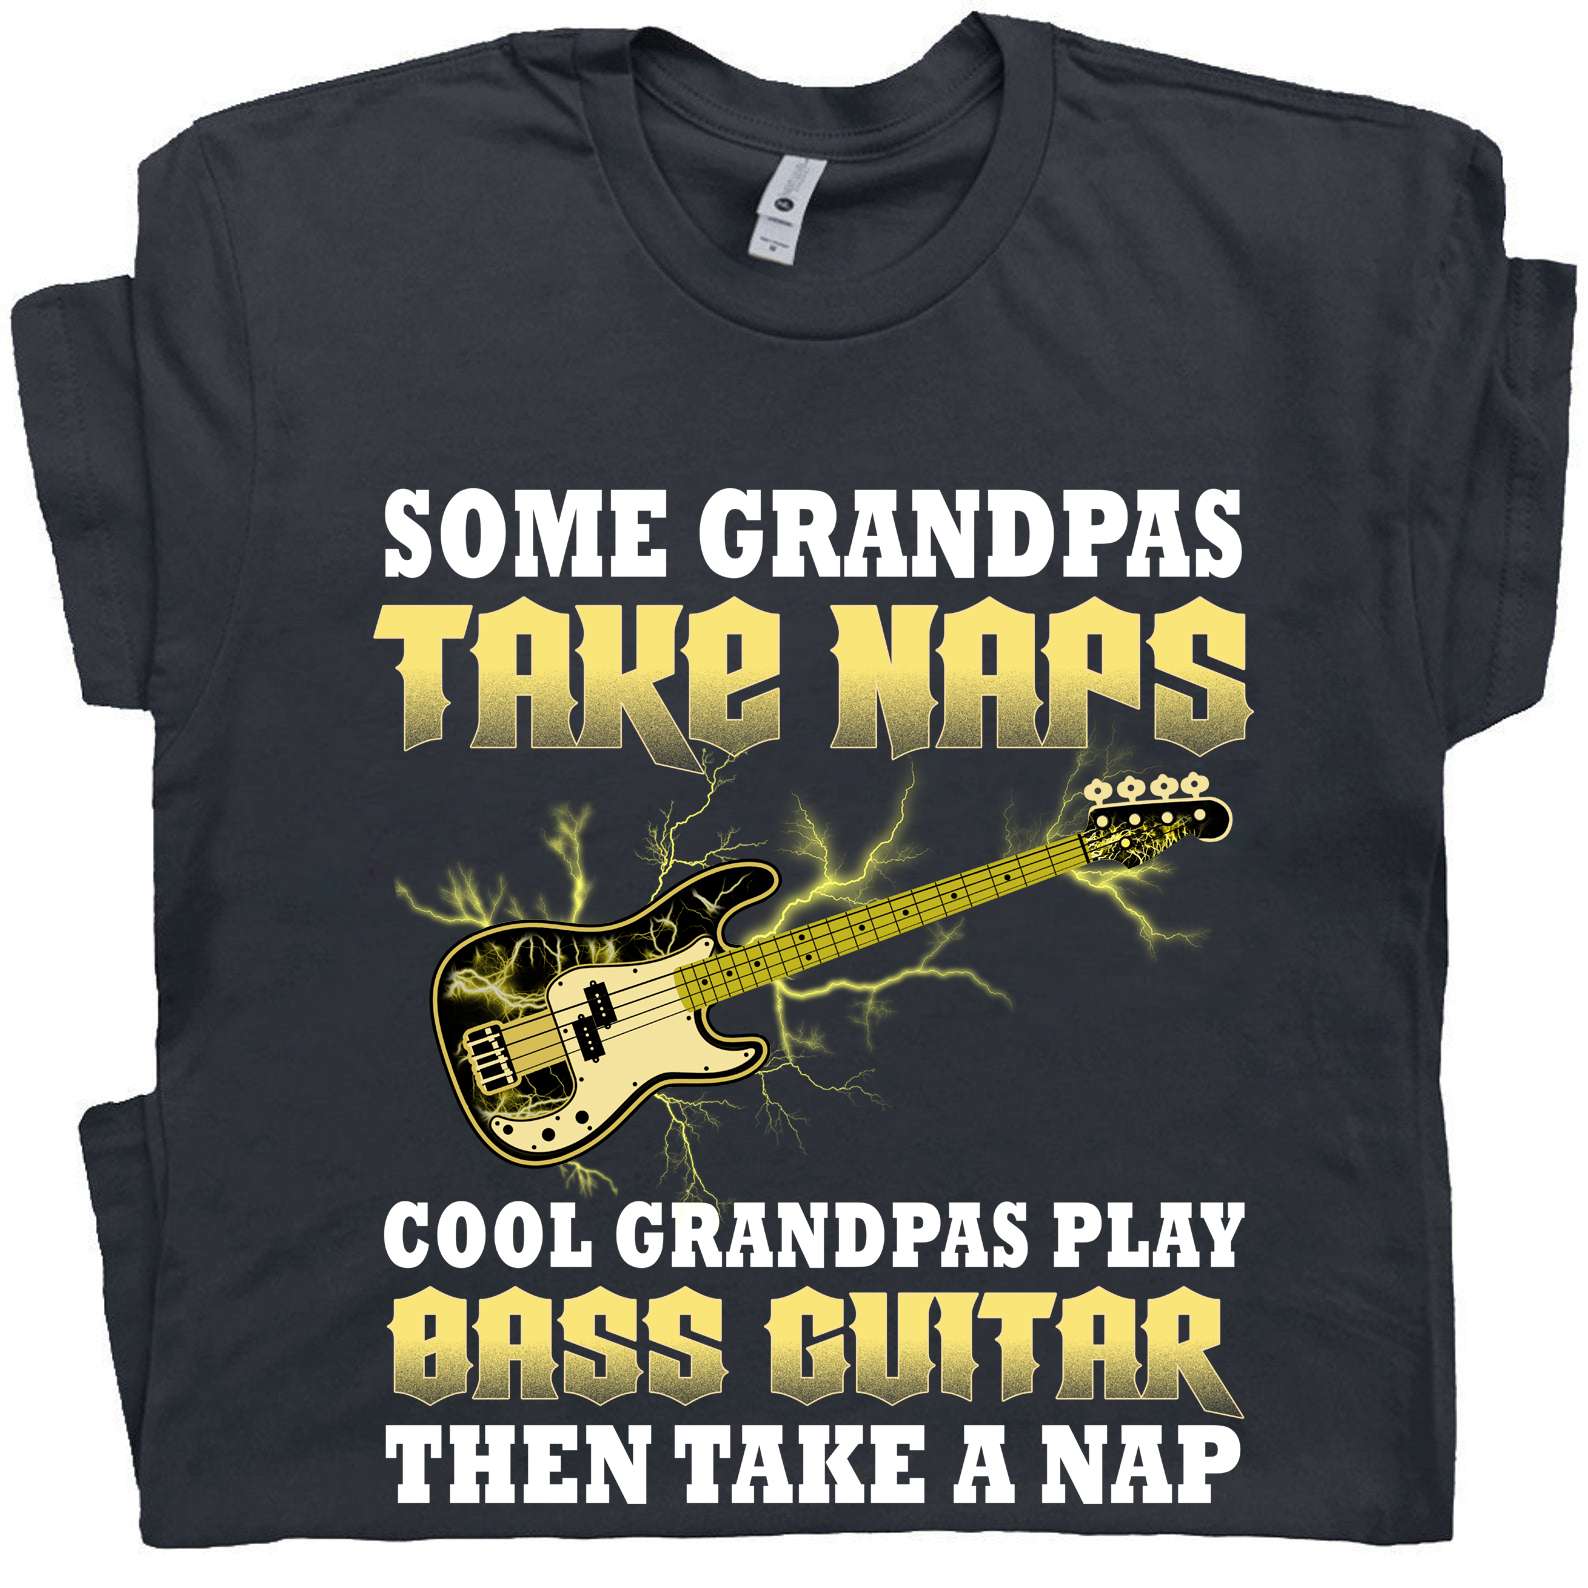 Bass Guitar - Some grandpas take naps cool grandpas play bass guitar then take a nap